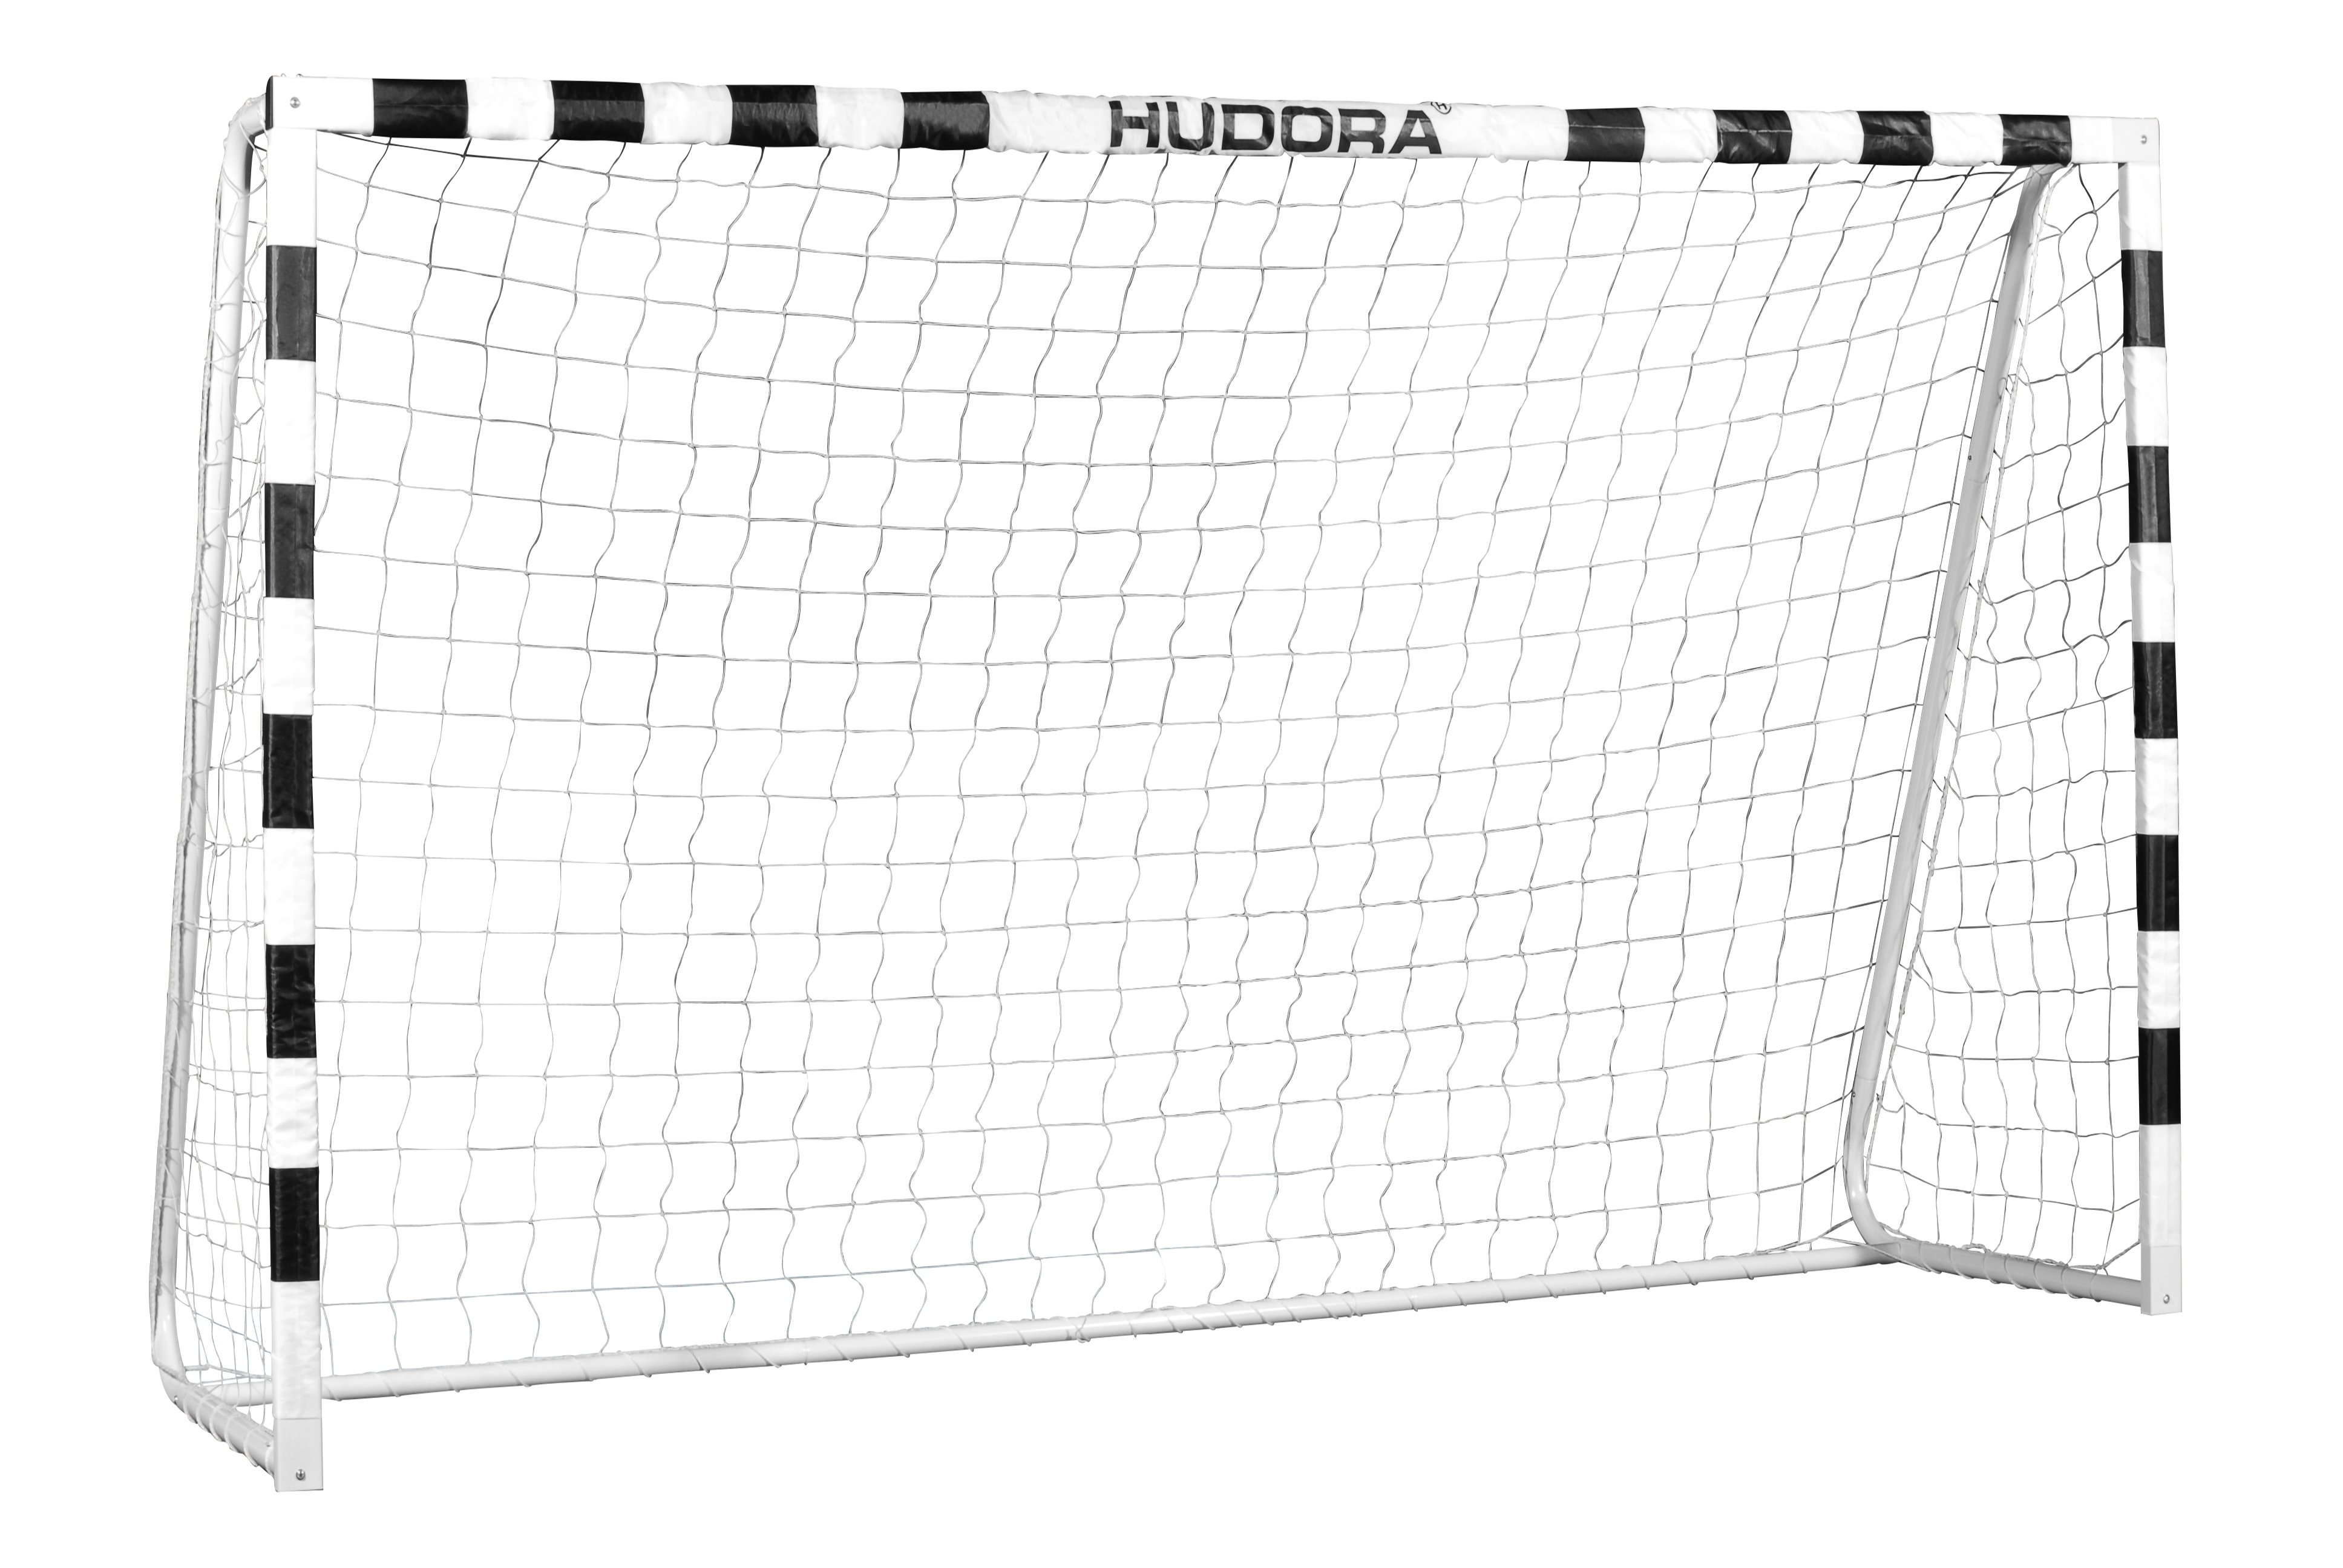 Hudora - Fodboldmål 300 x 200cm